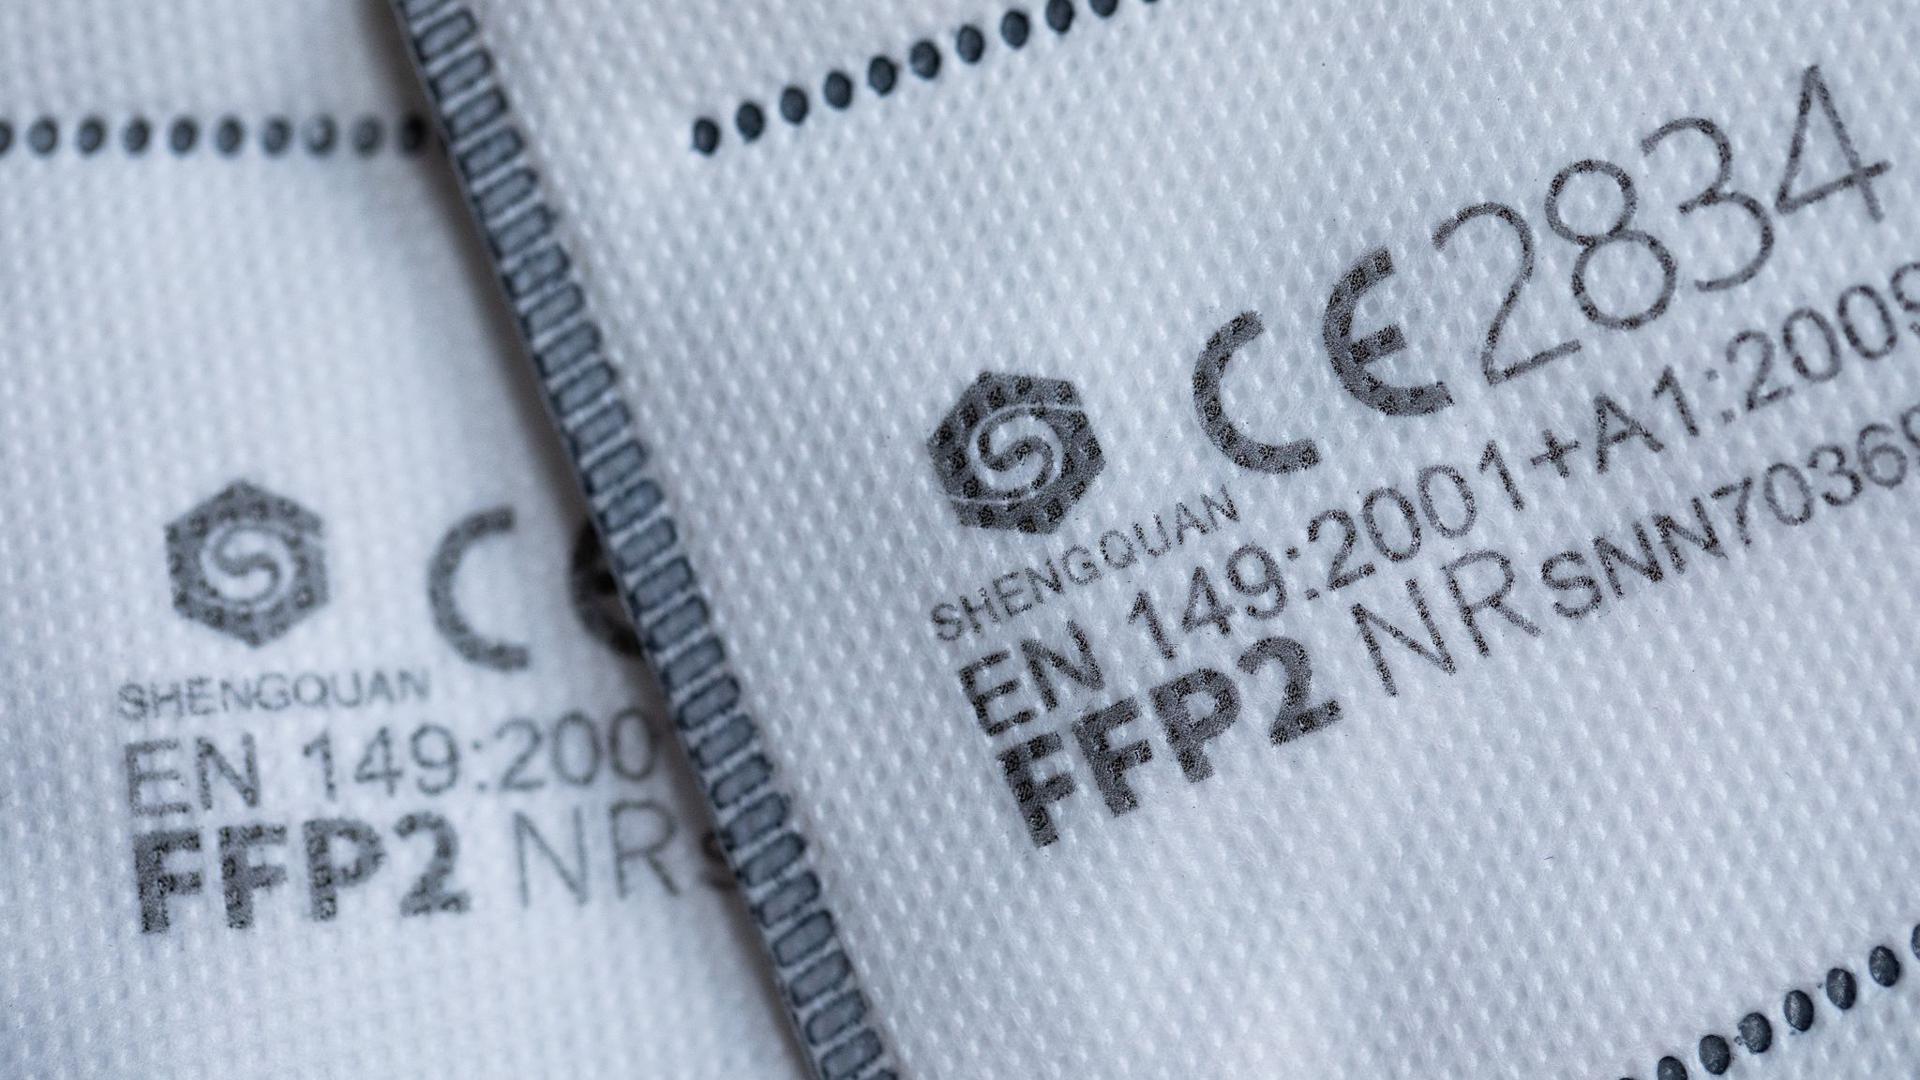 FFP2 Masken mit CE-Zertifizierung liegen auf einem Tisch.